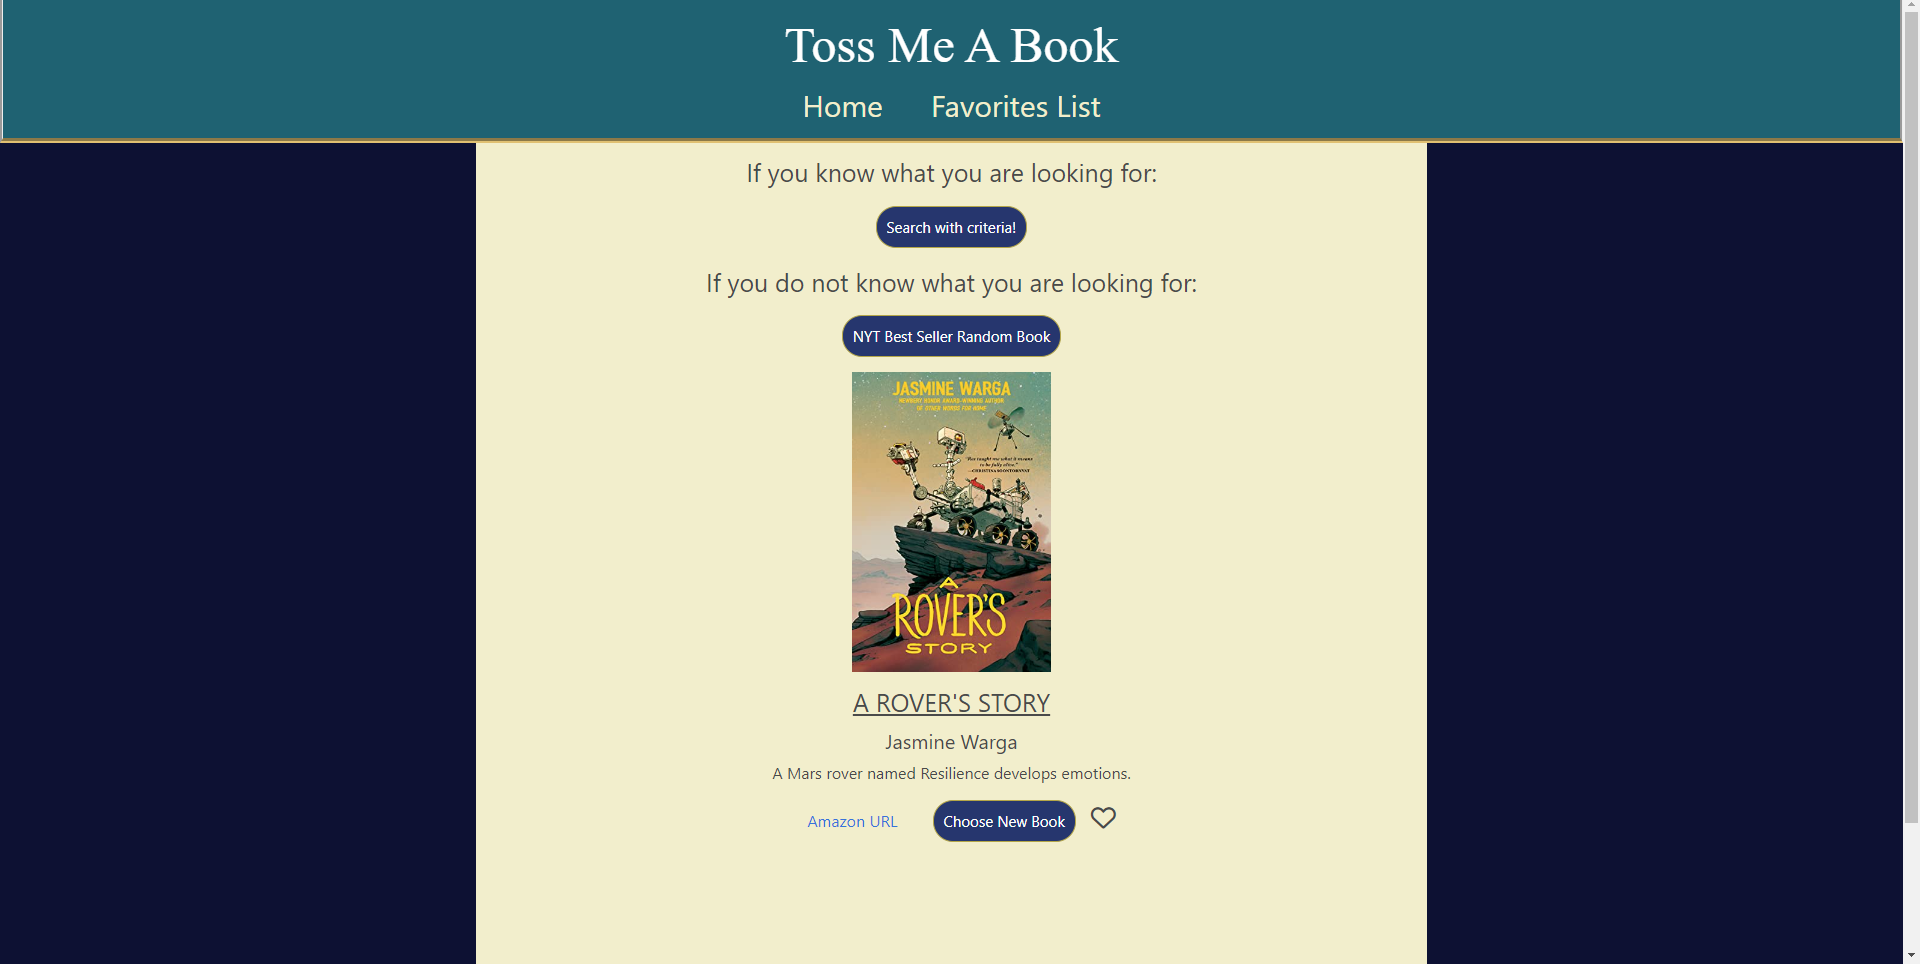 screenshot of Toss Me A Book application